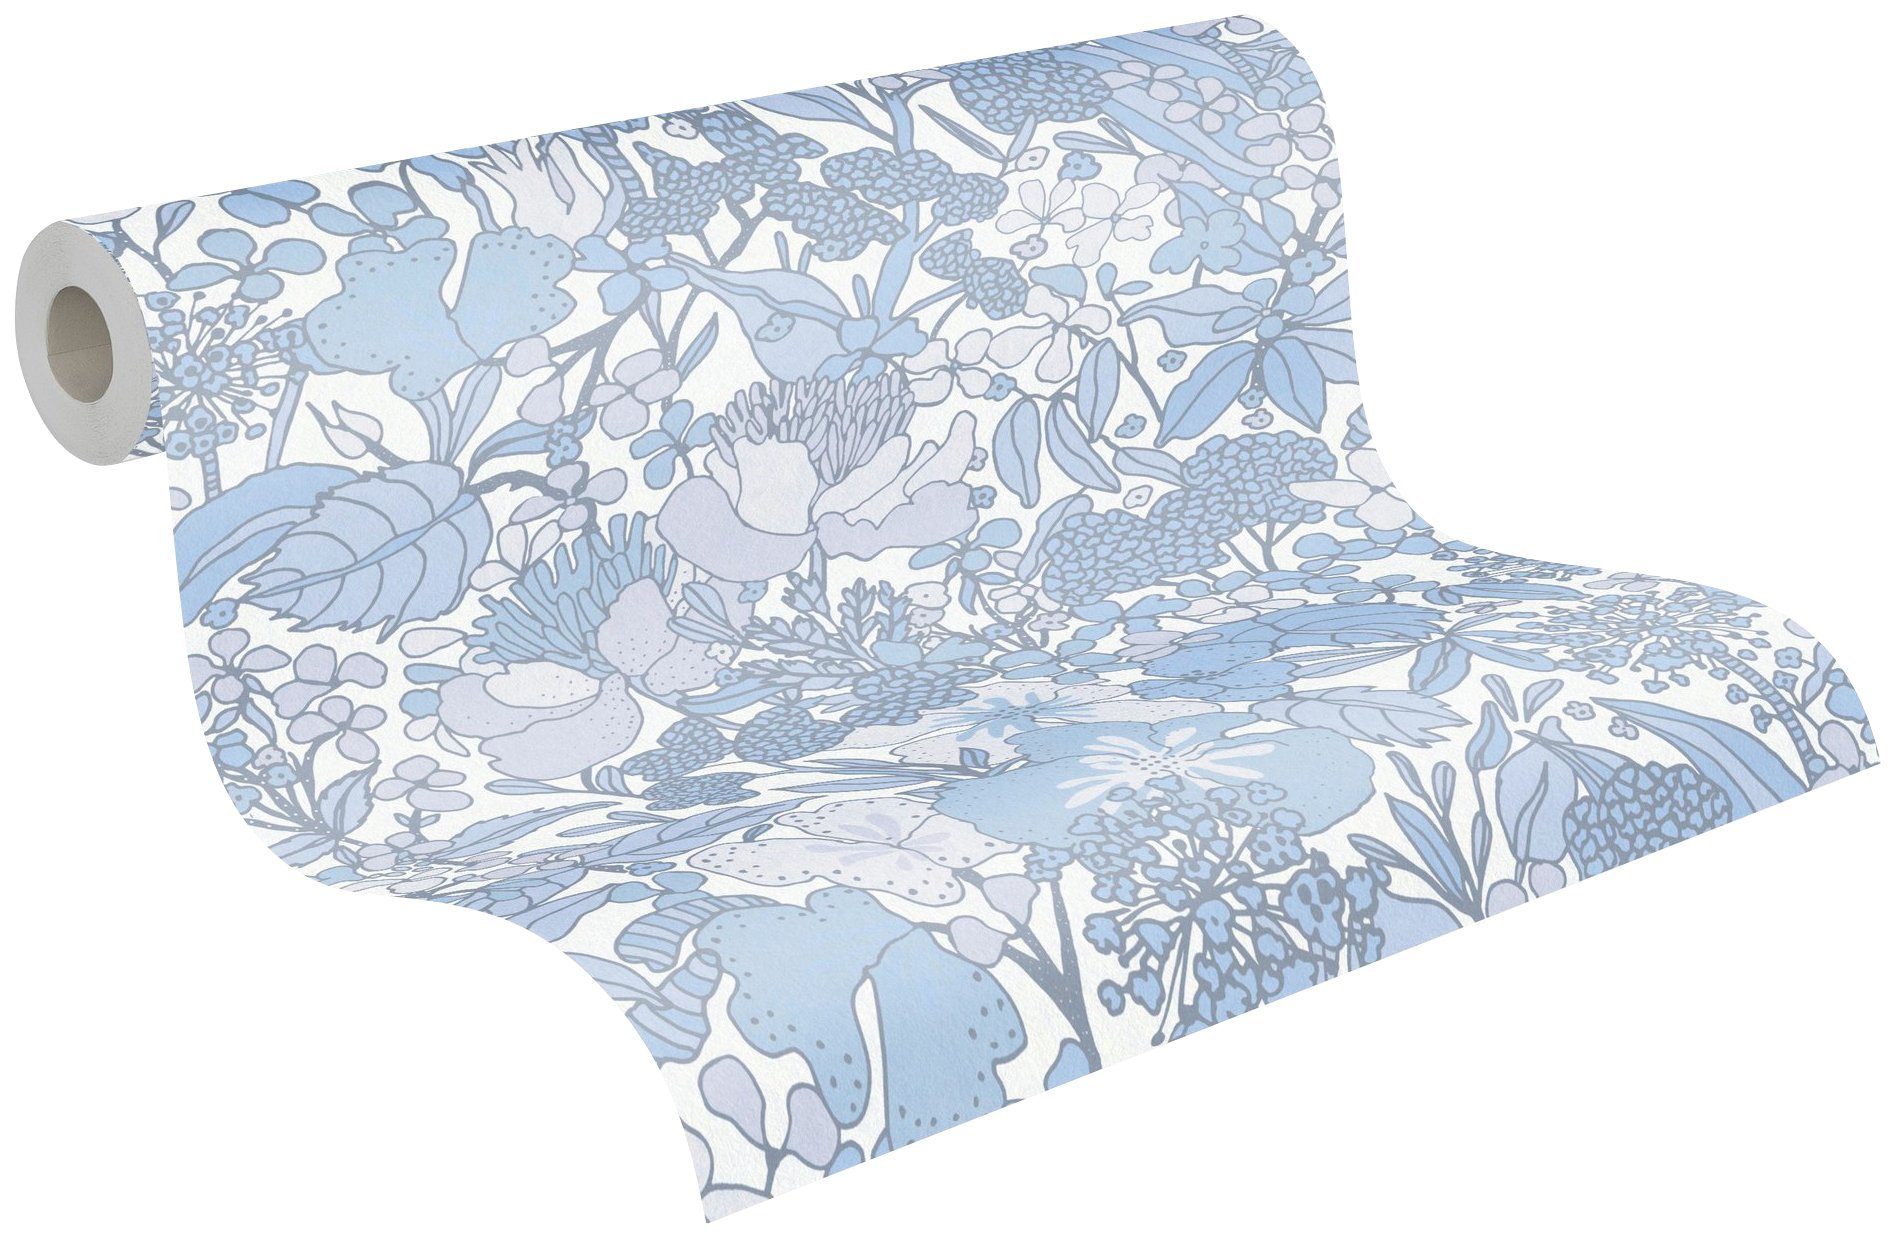 Architects Paper Vliestapete Impression, Tapete Dschungel glatt, Floral Blumentapete grau/blau/weiß botanisch, floral